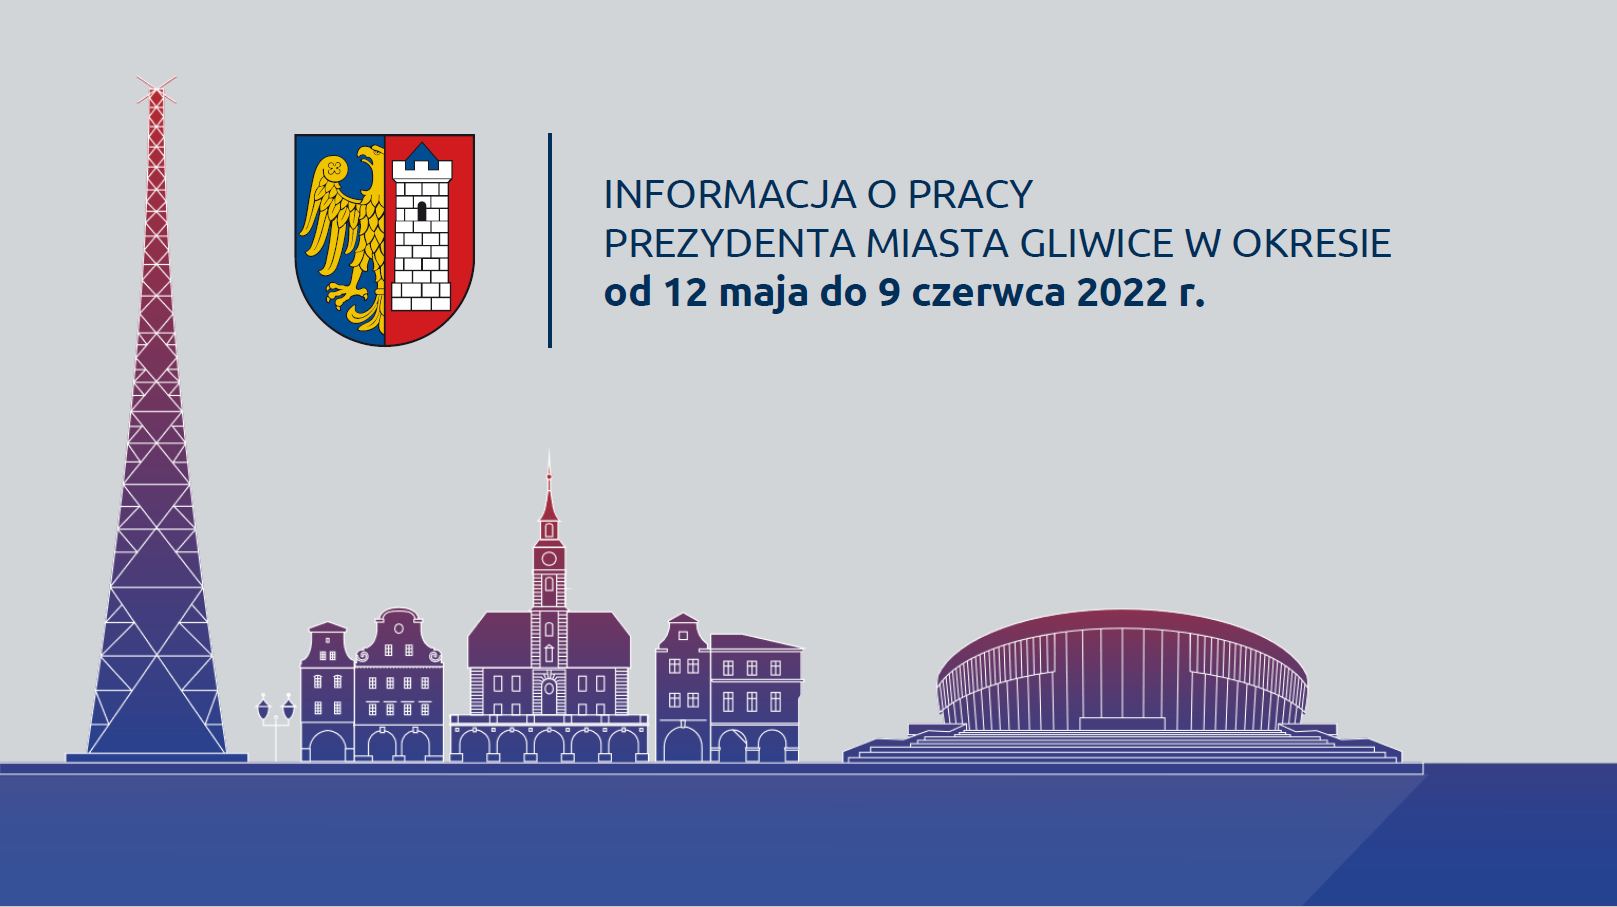 Informacja o pracy Prezydenta Miasta w okresie od 12 maja do 9 czerwca 2022 r.